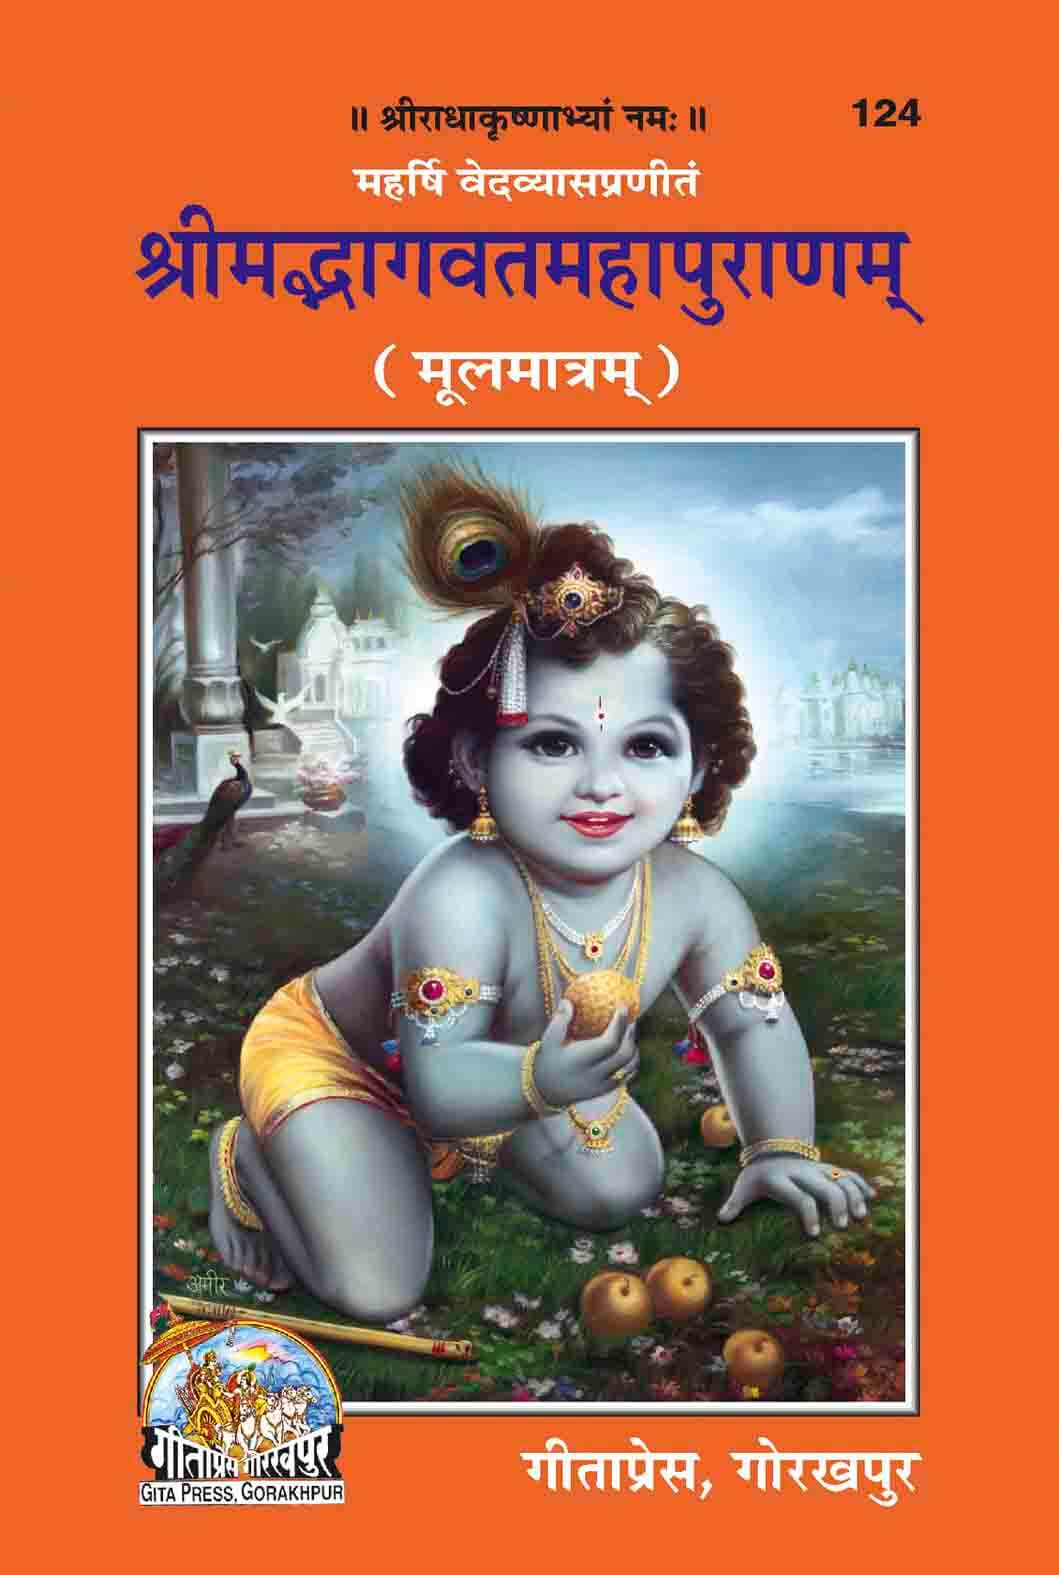 Shrimad Bhagavat Mahapuranam (Original Text, Medium Size, Only in Sanskrit) by Gita Press